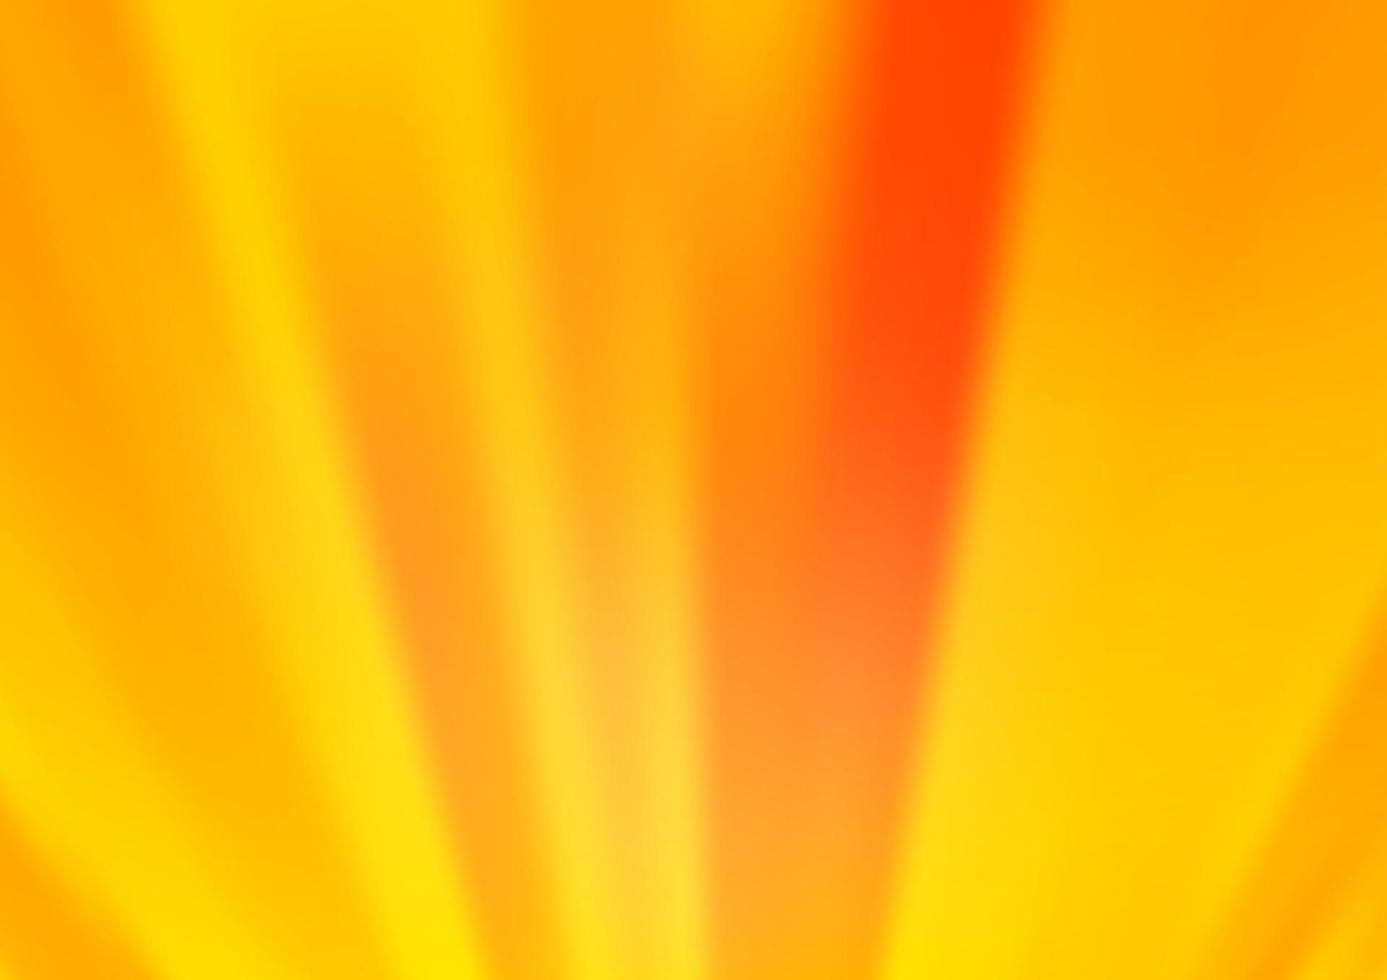 hellgelb, orange Vektor glänzend abstrakten Hintergrund.